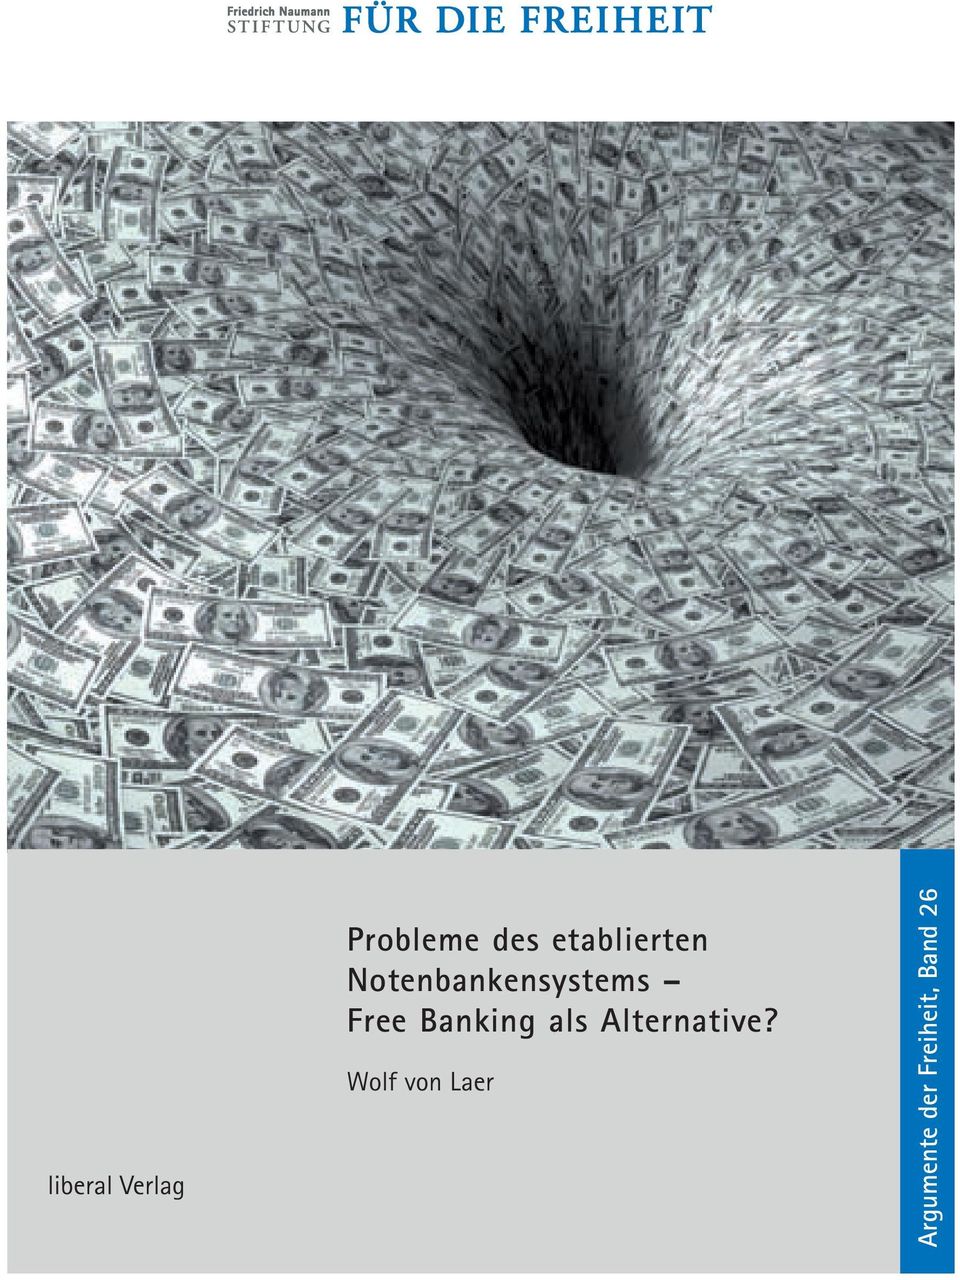 Free Banking als Alternative?